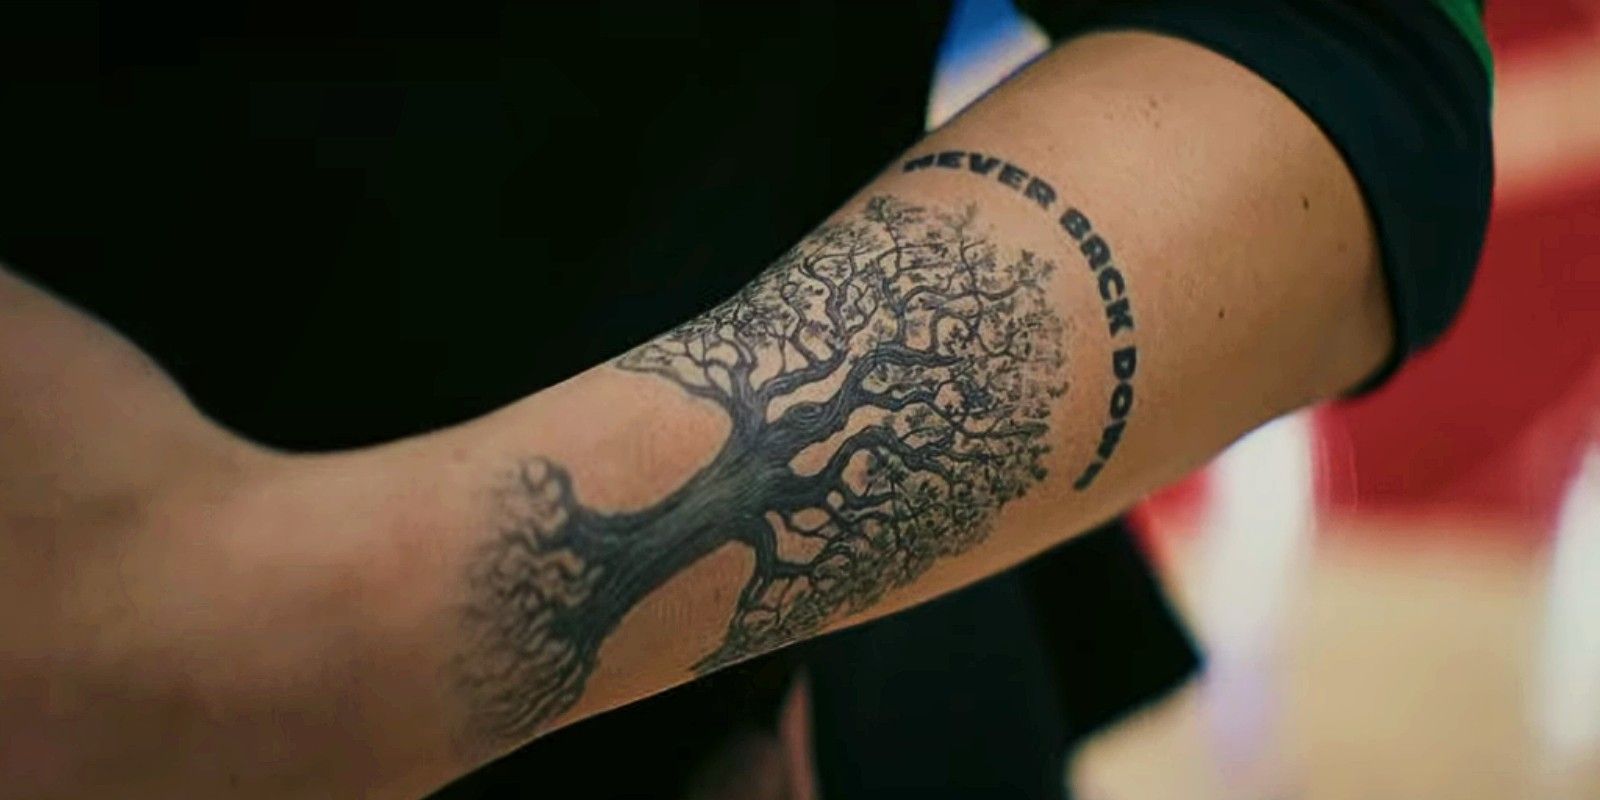 Oak Tree Temporary Tattoo set of 3 - Etsy